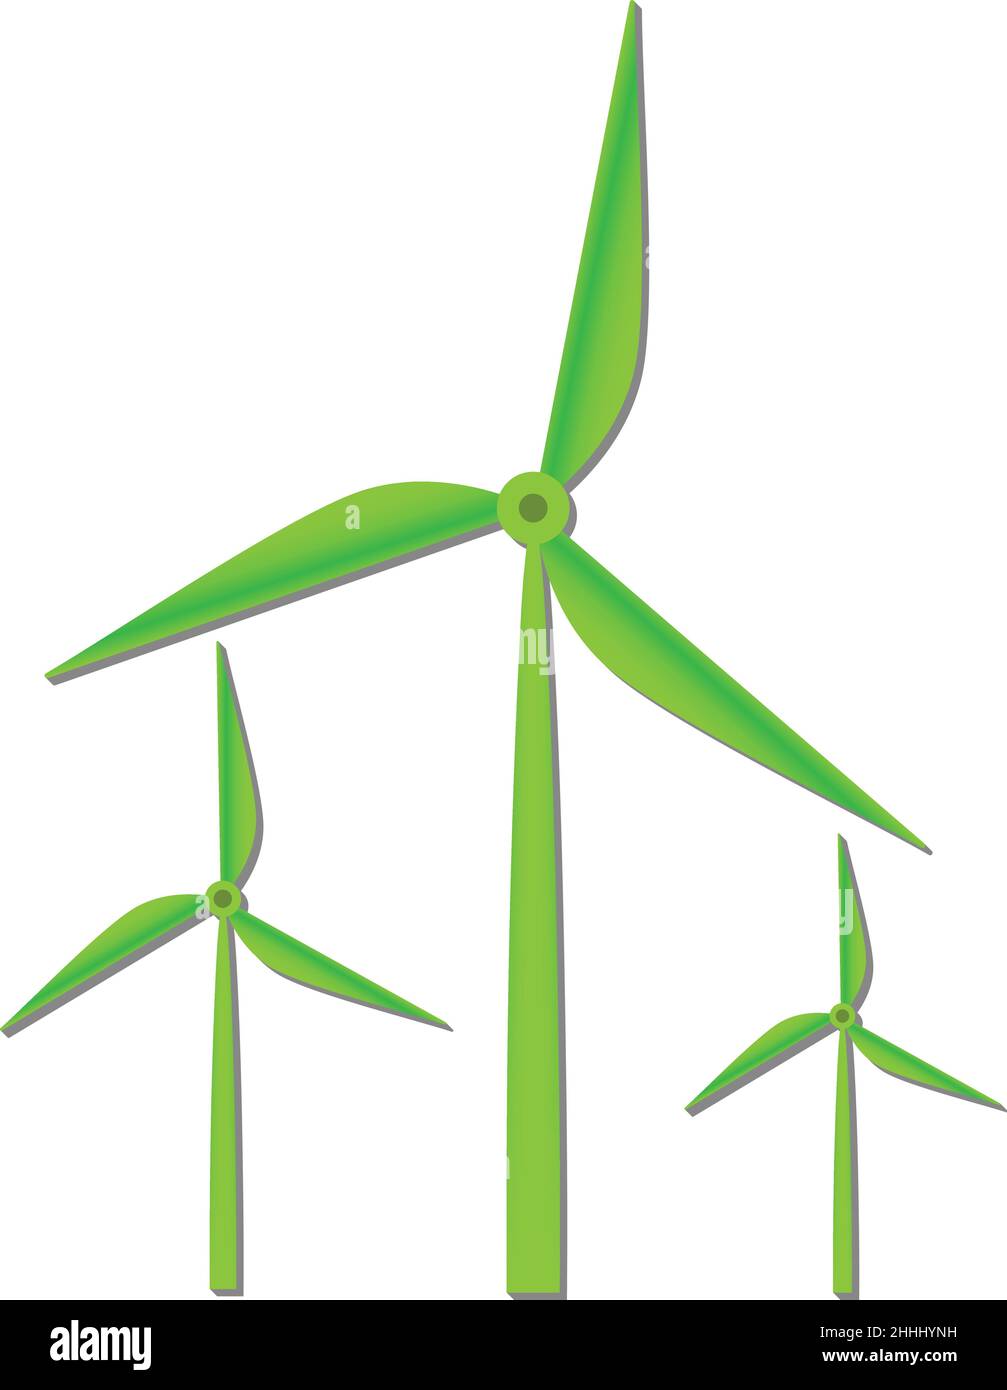 turbine eoliche, impianto eolico simbolo isolato su sfondo bianco, illustrazione vettoriale Illustrazione Vettoriale